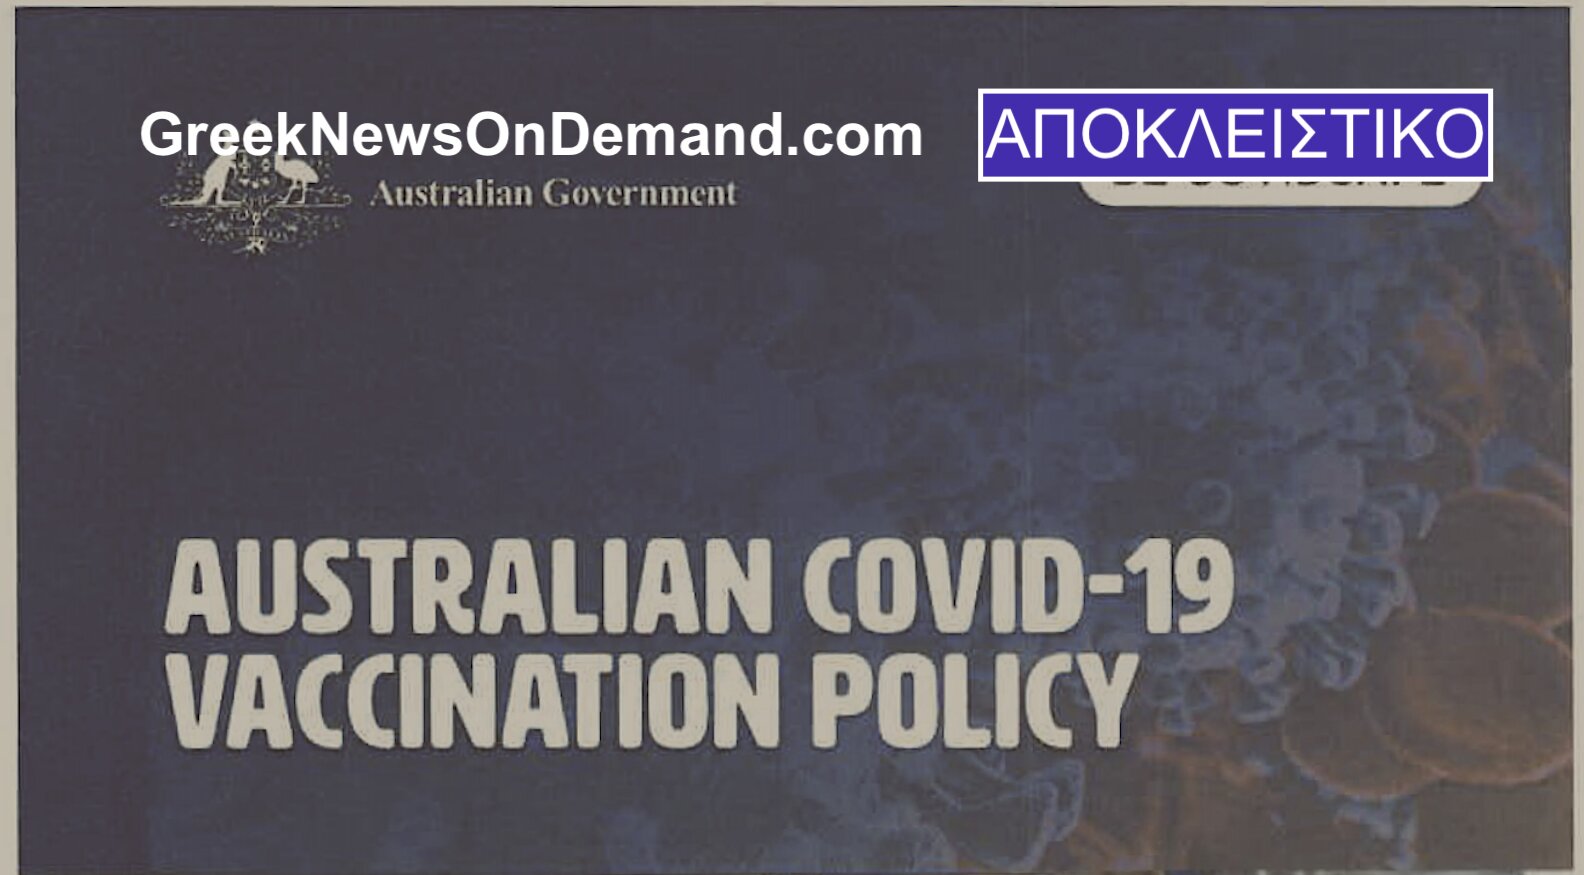 Αποκάλυψη-βόμβα: Εξουσιοδότησε ένα εμβόλιο COVID-19-…ΔΗΛΗΤΗΡΙΟ από το…2016 η Αυστραλιανή κυβέρνηση με ό, τι σημαίνει αυτό!!! Πετάει από τη χαρά του ο Μητσοτάκης!!!